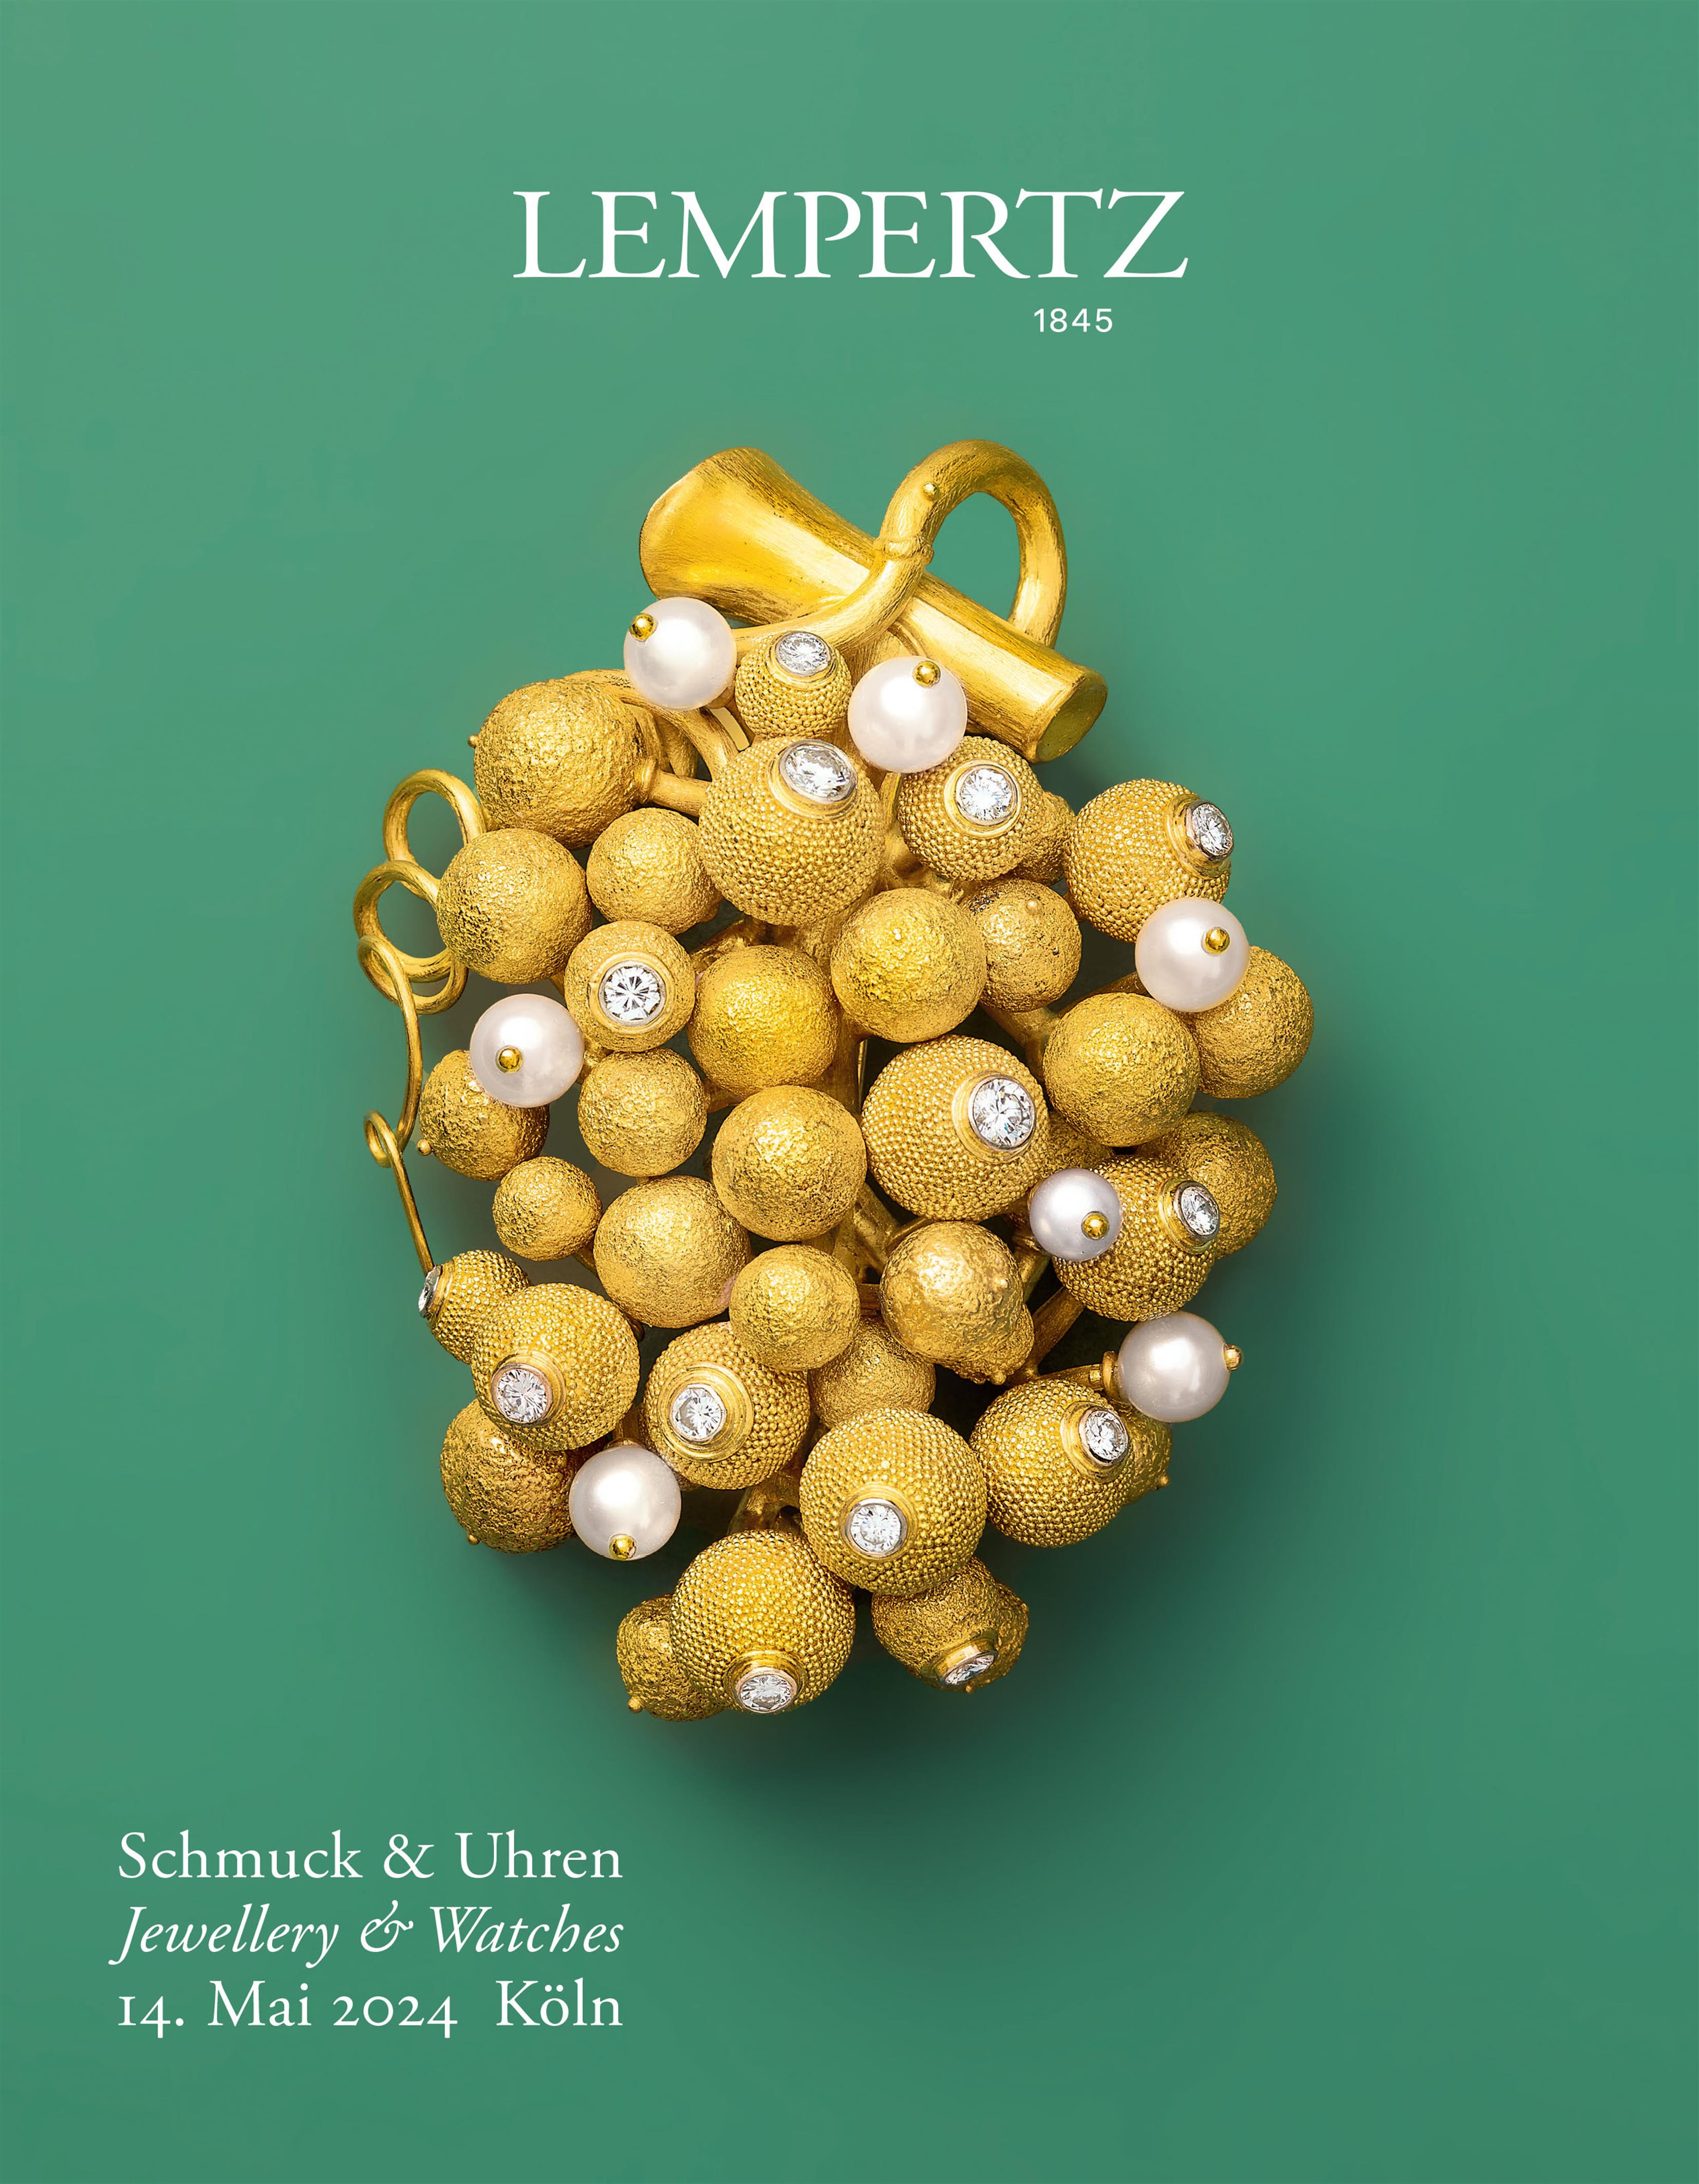 Auktionskatalog - Schmuck und Armbanduhren - Online Katalog - Auktion 1243 – Ersteigern Sie hochwertige Kunst in der nächsten Lempertz-Auktion!